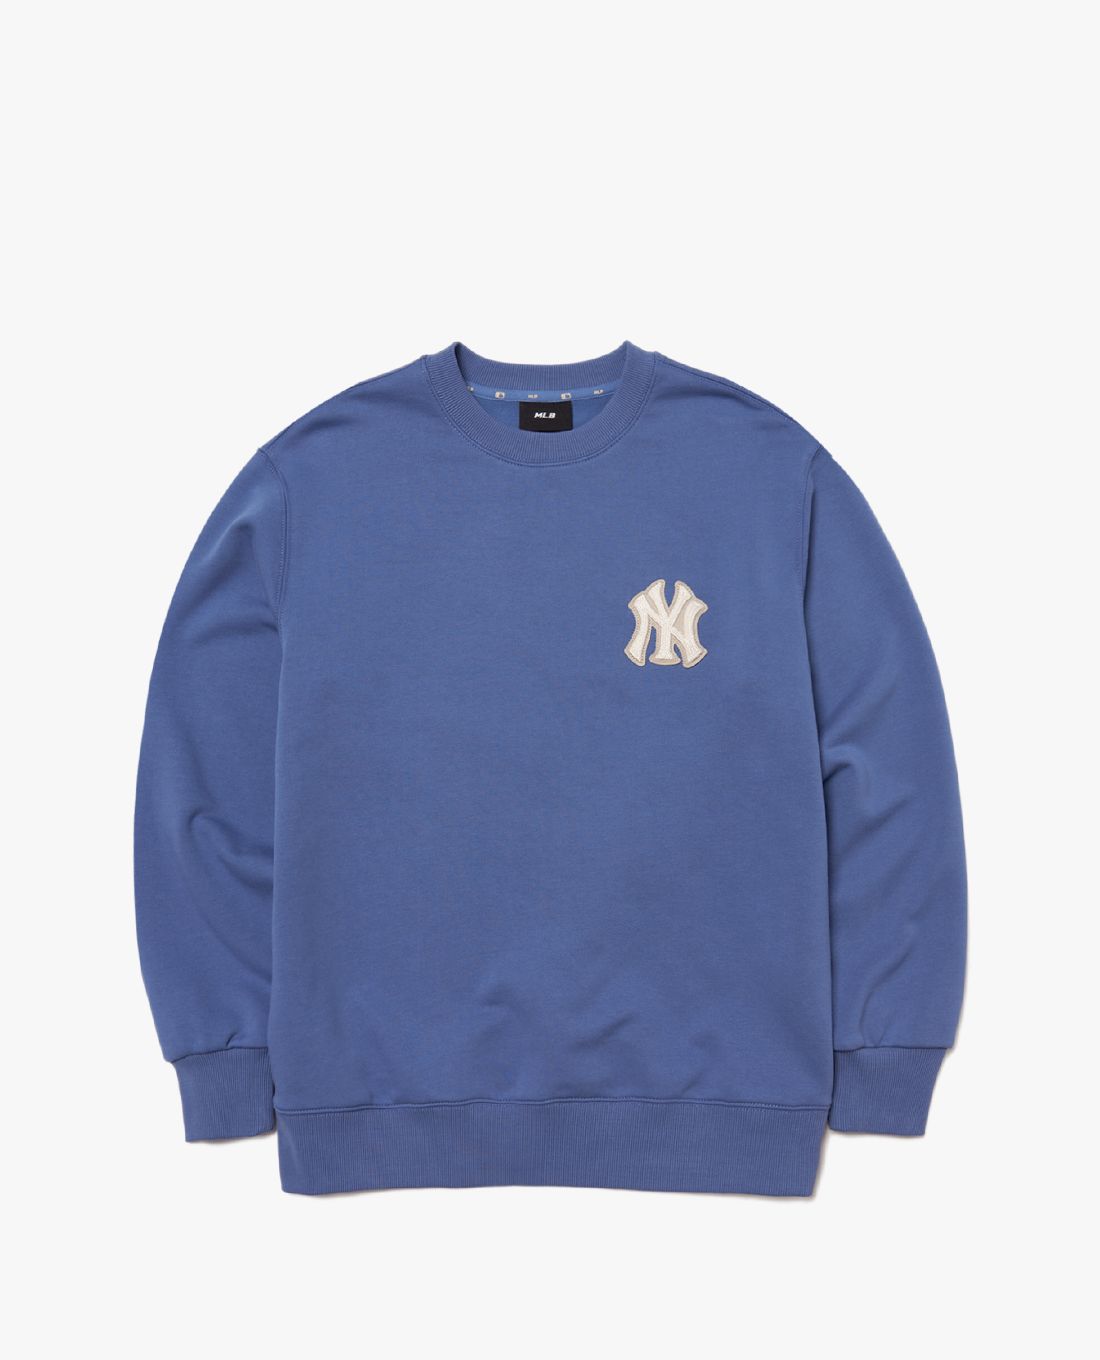 MLB Monogram Sweatshirt  The Sneaker House  MLB Chính Hãng